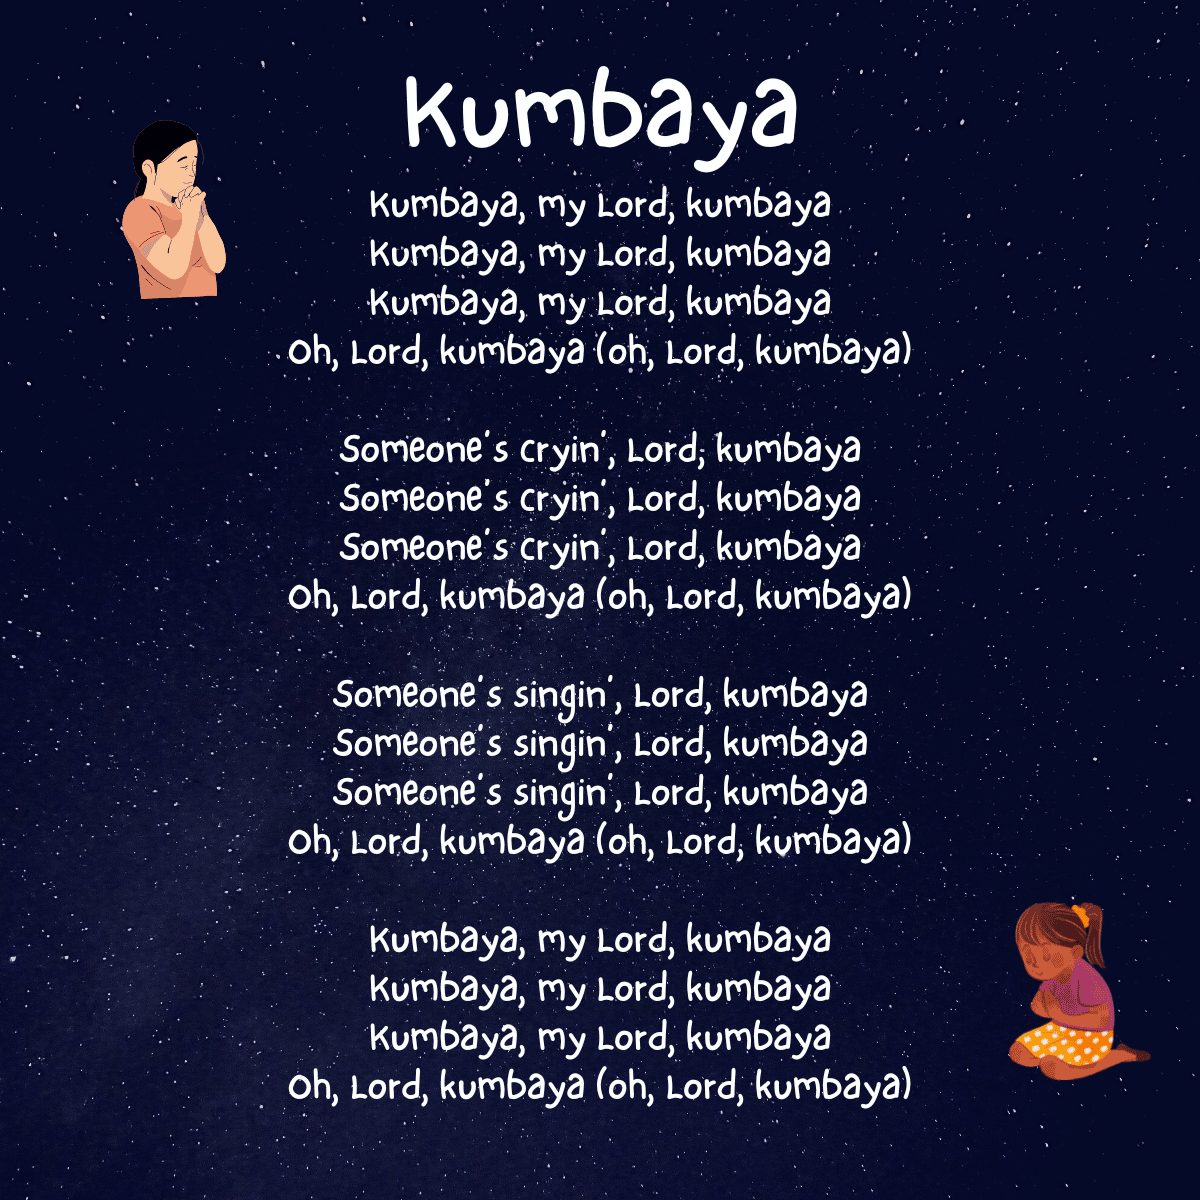 Kumbaya lyrics